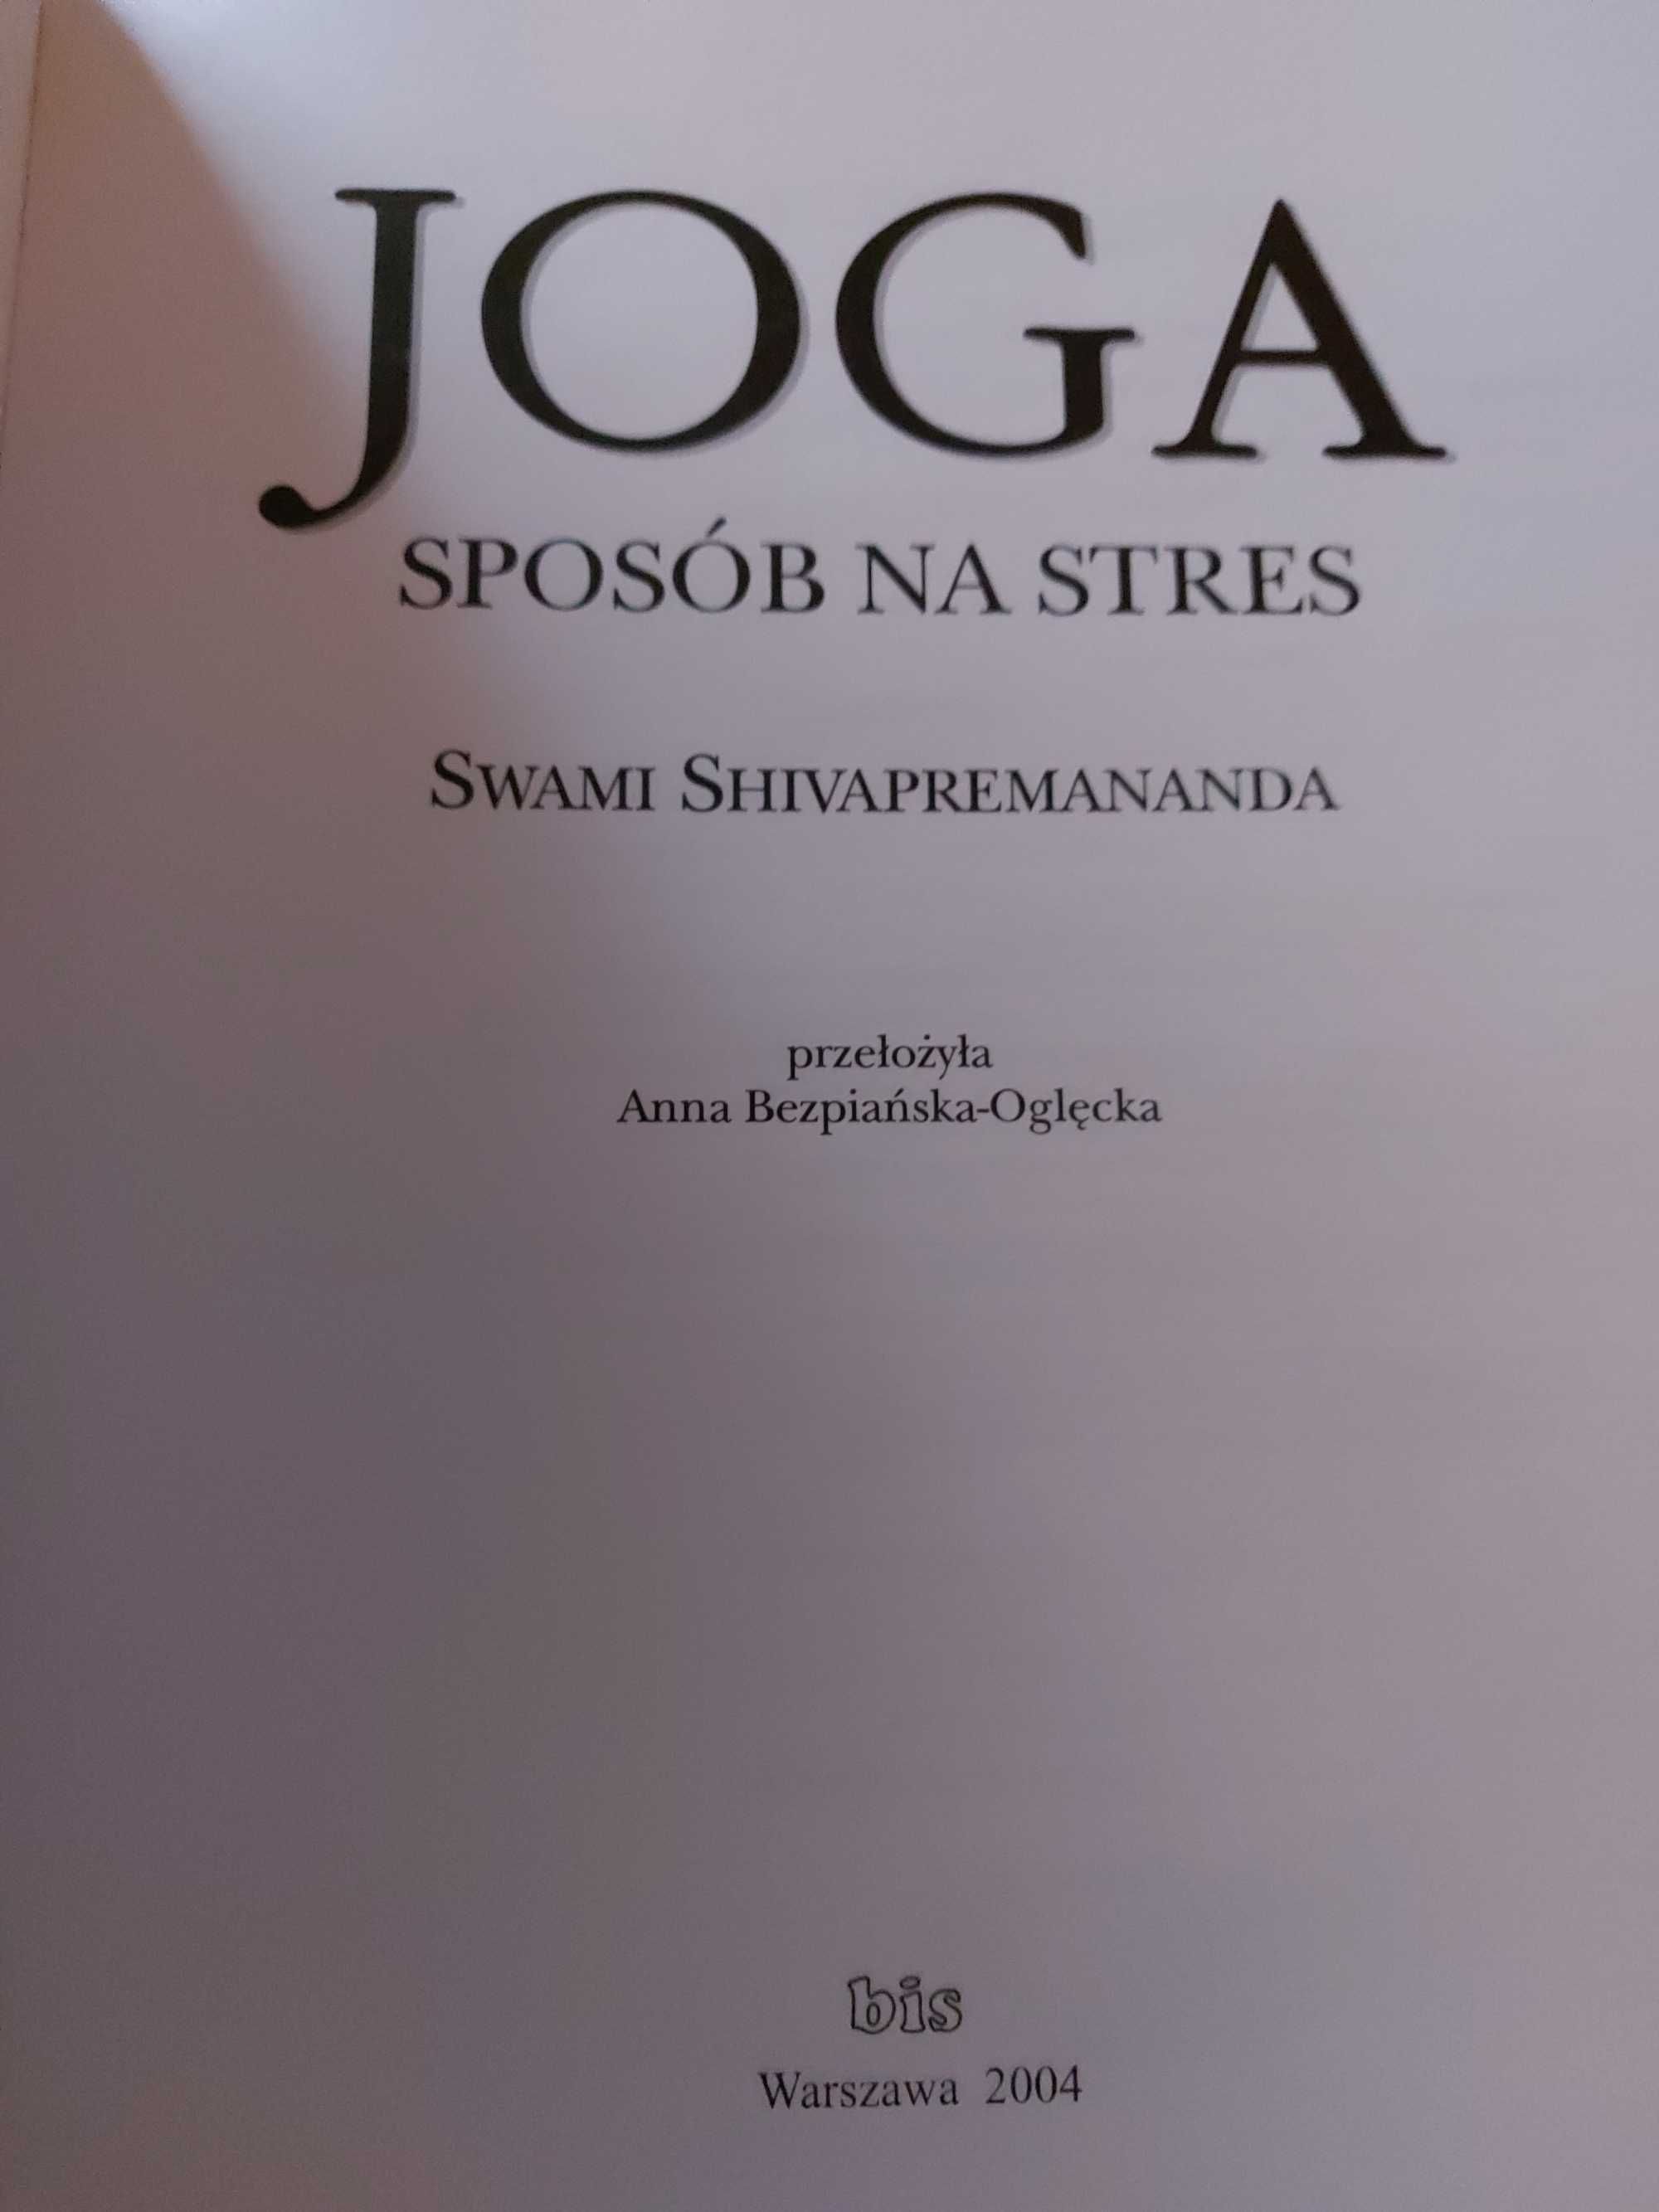 JOGA sposób na stres - Swami Shivapremananda